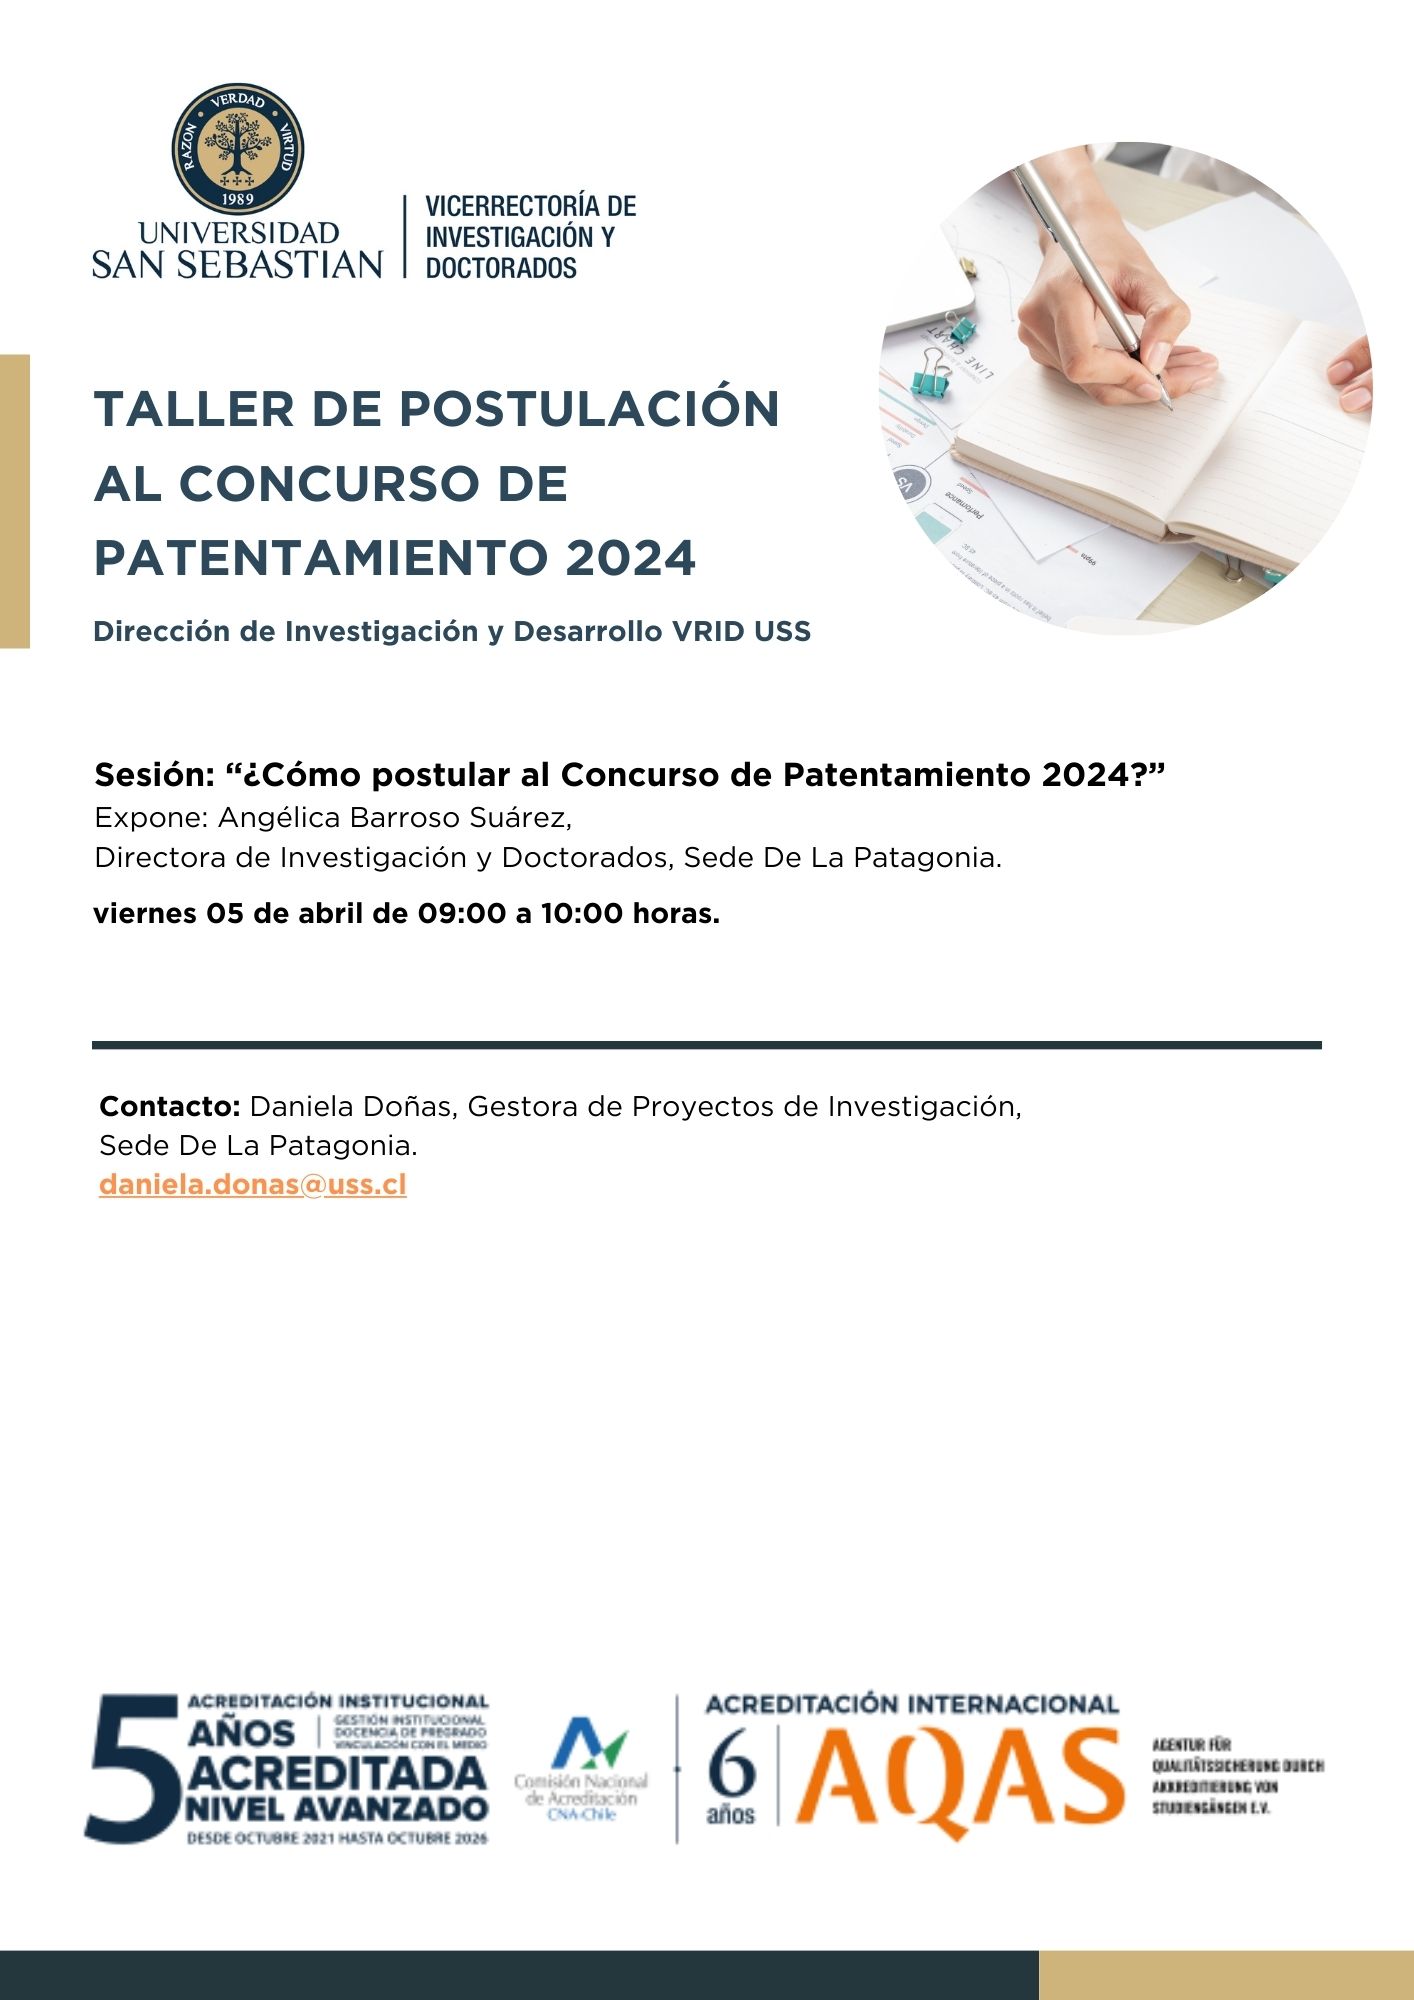 Talleres y Convocatorias Investigación Concurso de Patentamiento 2024